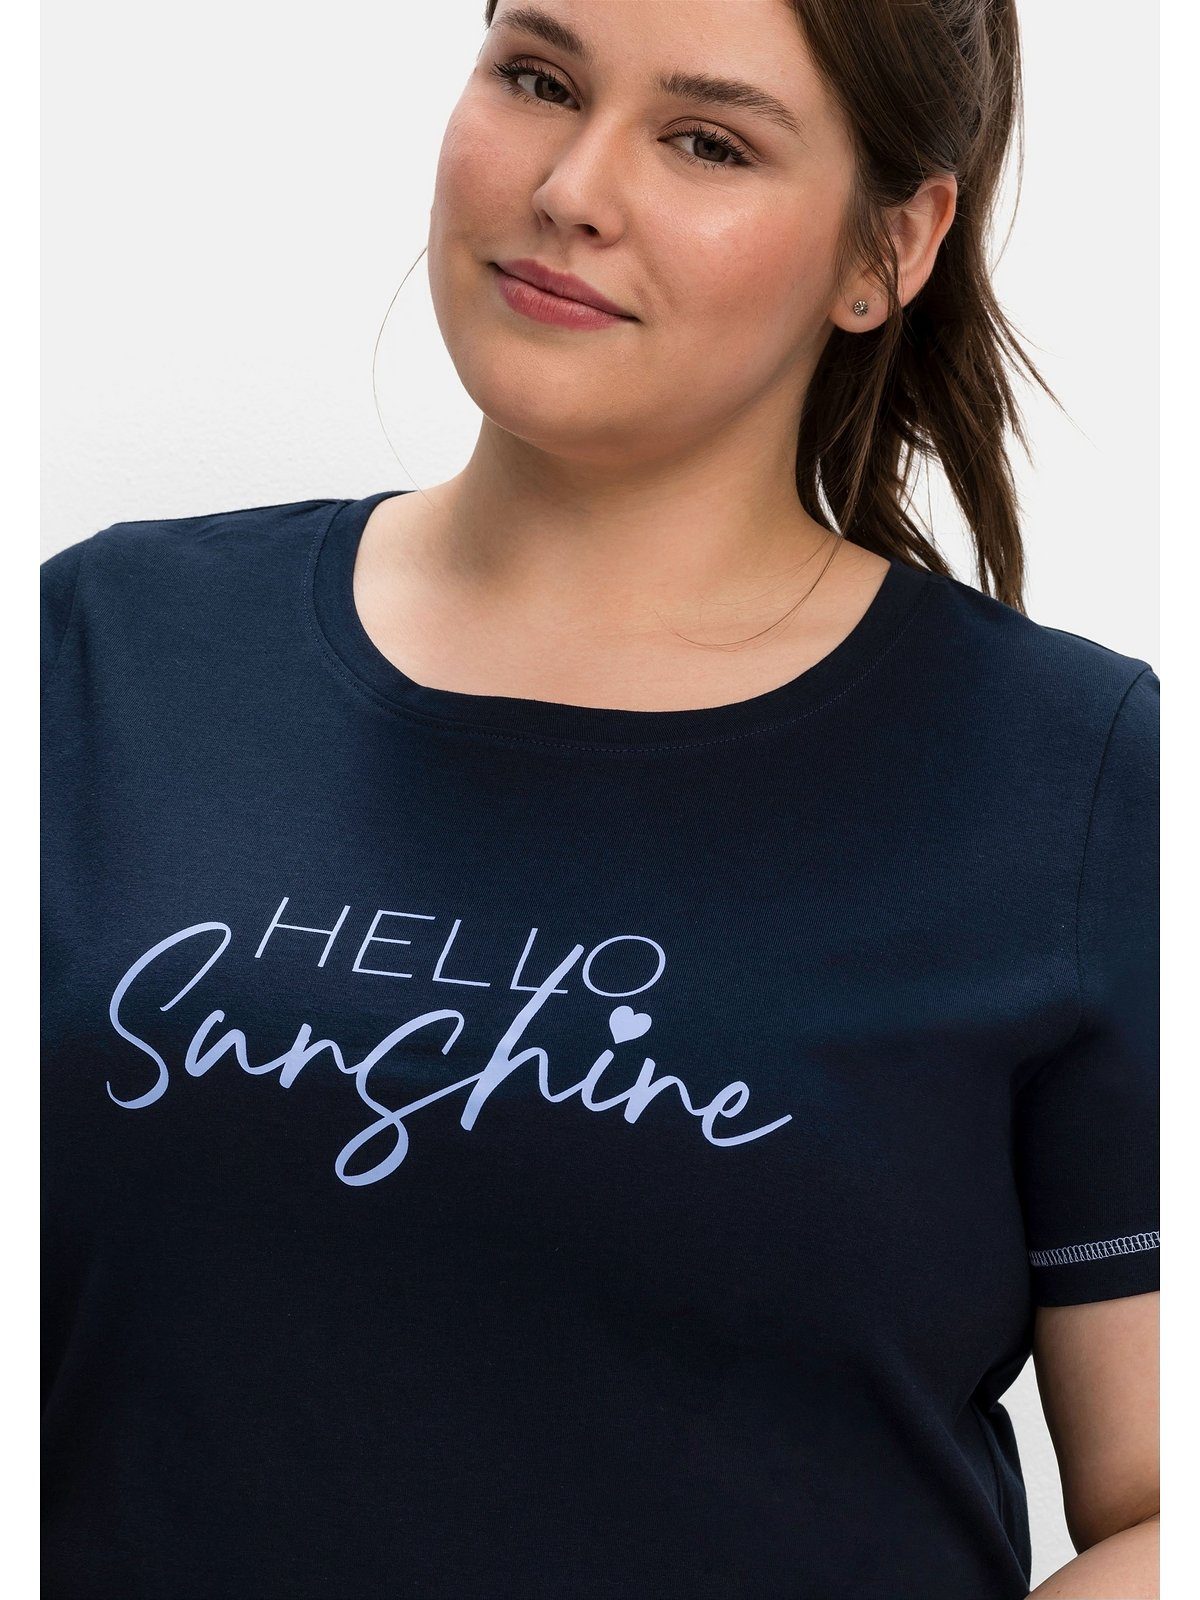 bedruckt T-Shirt Wordingprint, tailliert Sheego leicht nachtblau Große Größen mit